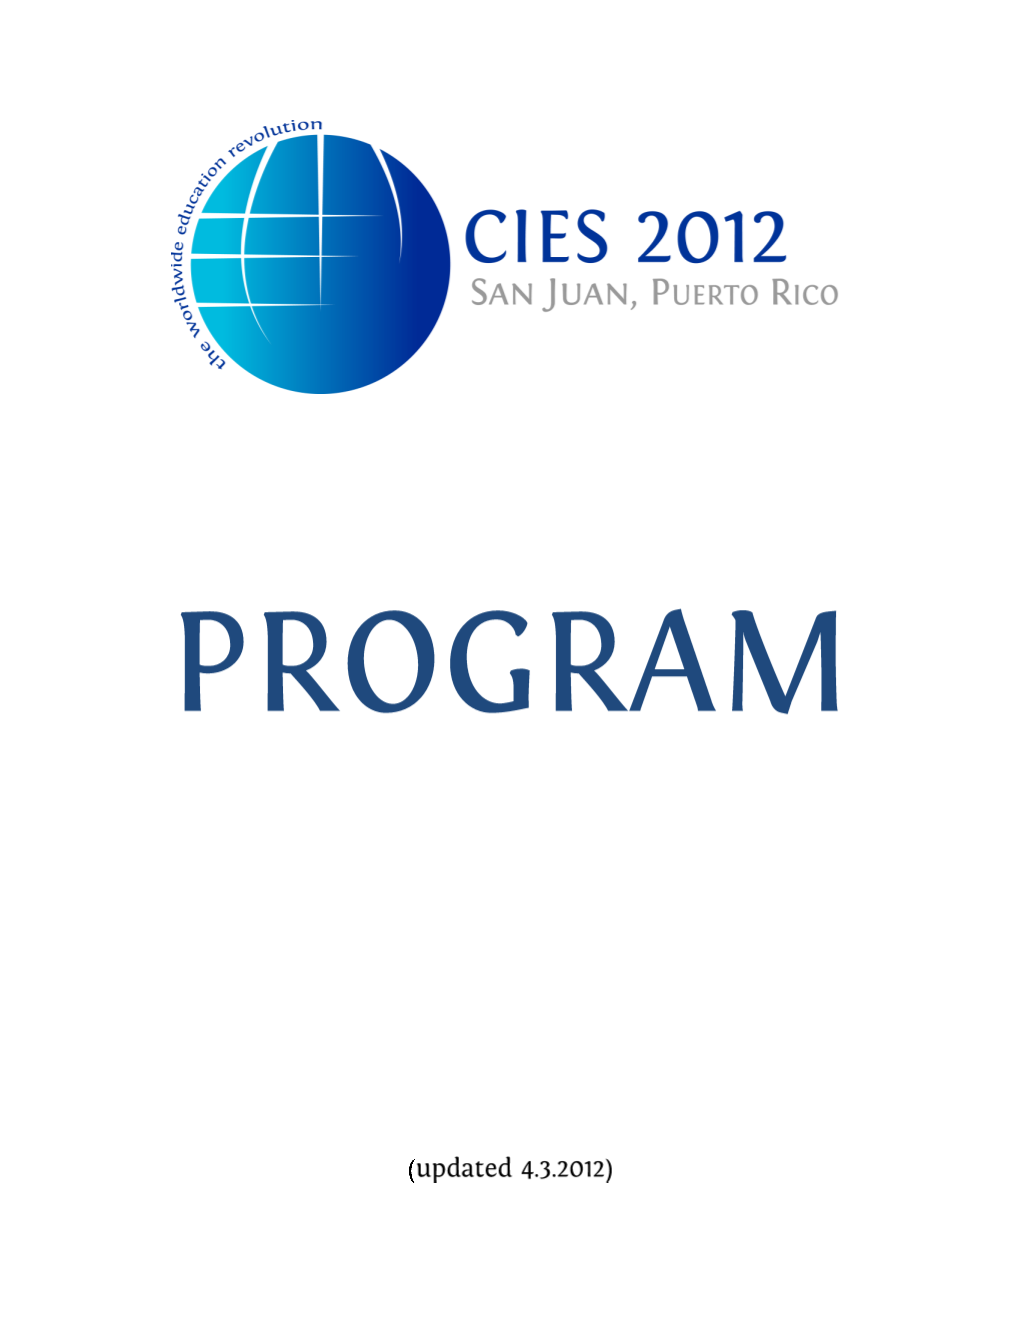 CIES 2012 Program